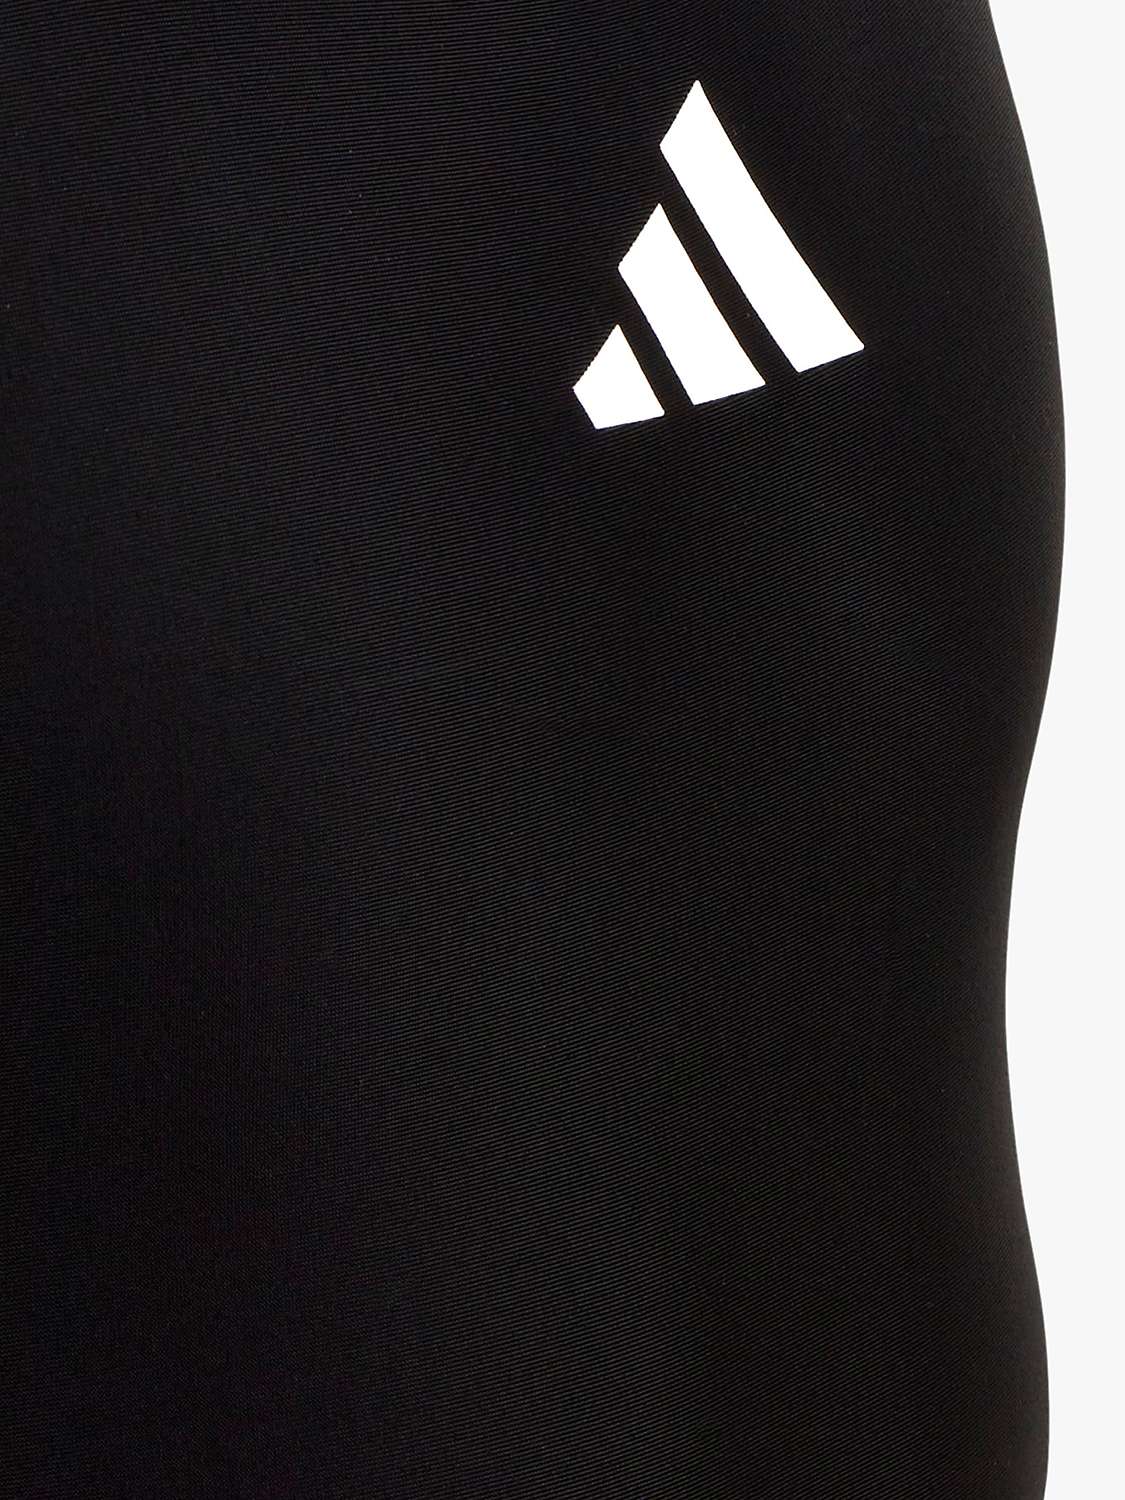 Buy adidas Kids' Logo Swimsuit, Black Online at johnlewis.com